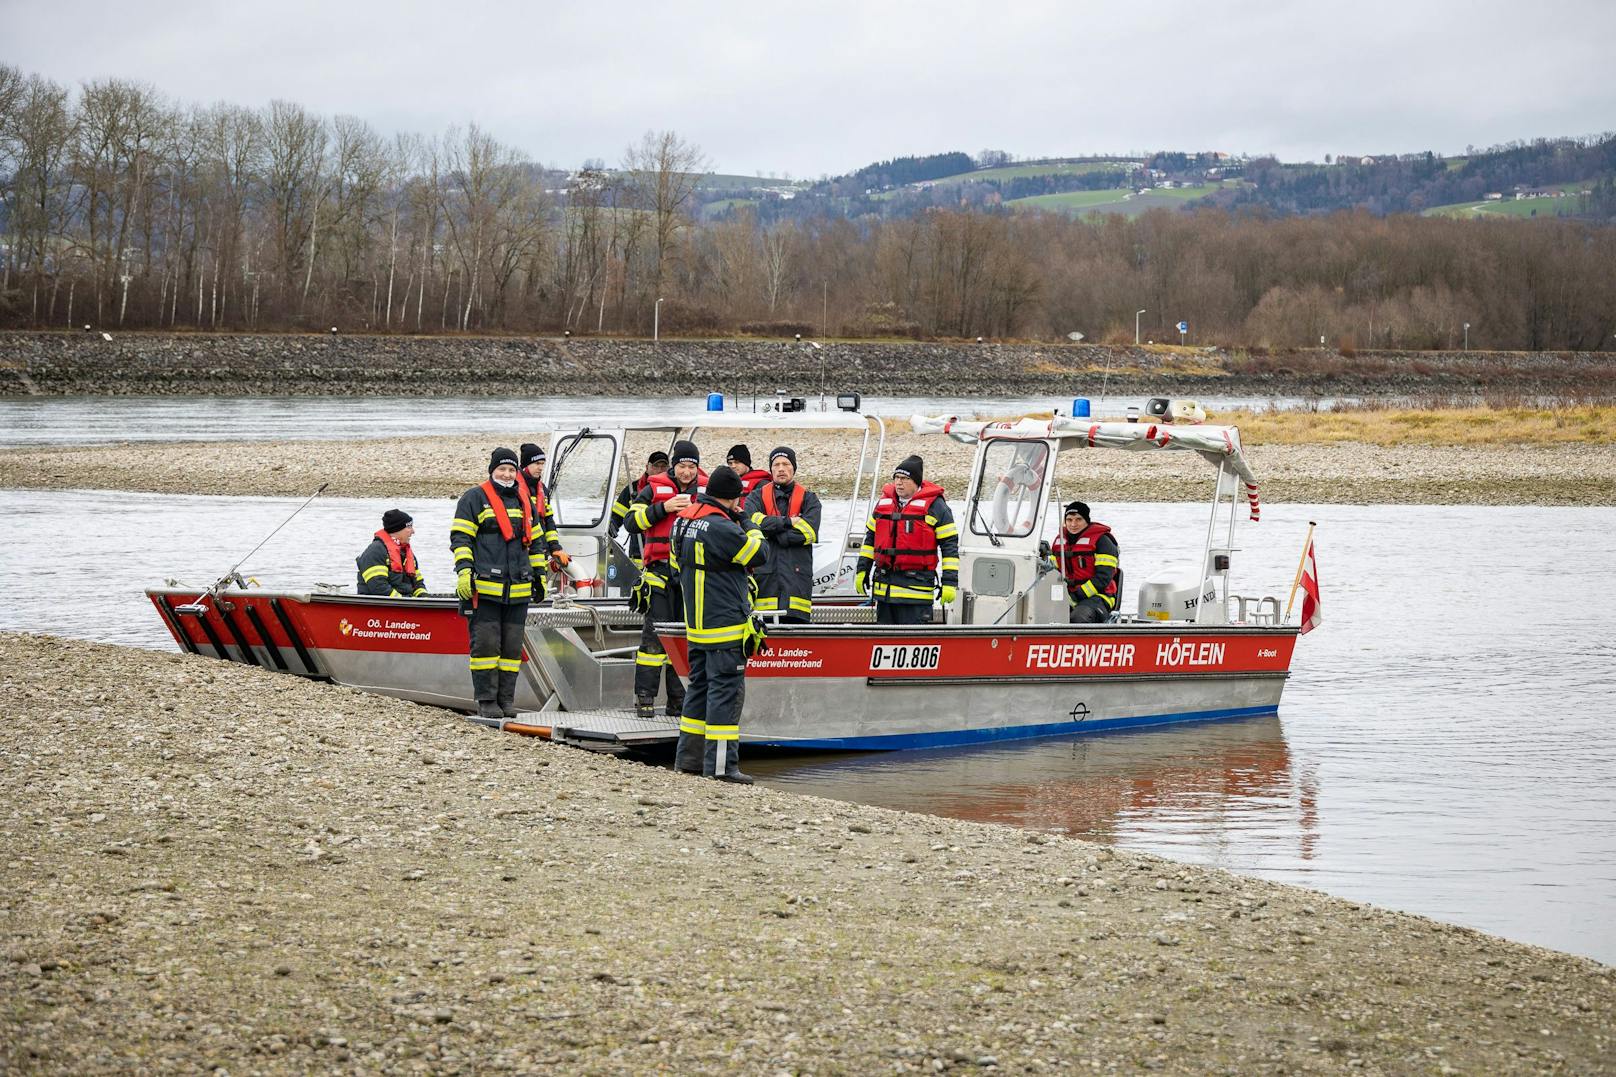 Feuerwehrmänner fuhren mit Booten der Donau entlang und suchten nach dem Mann.